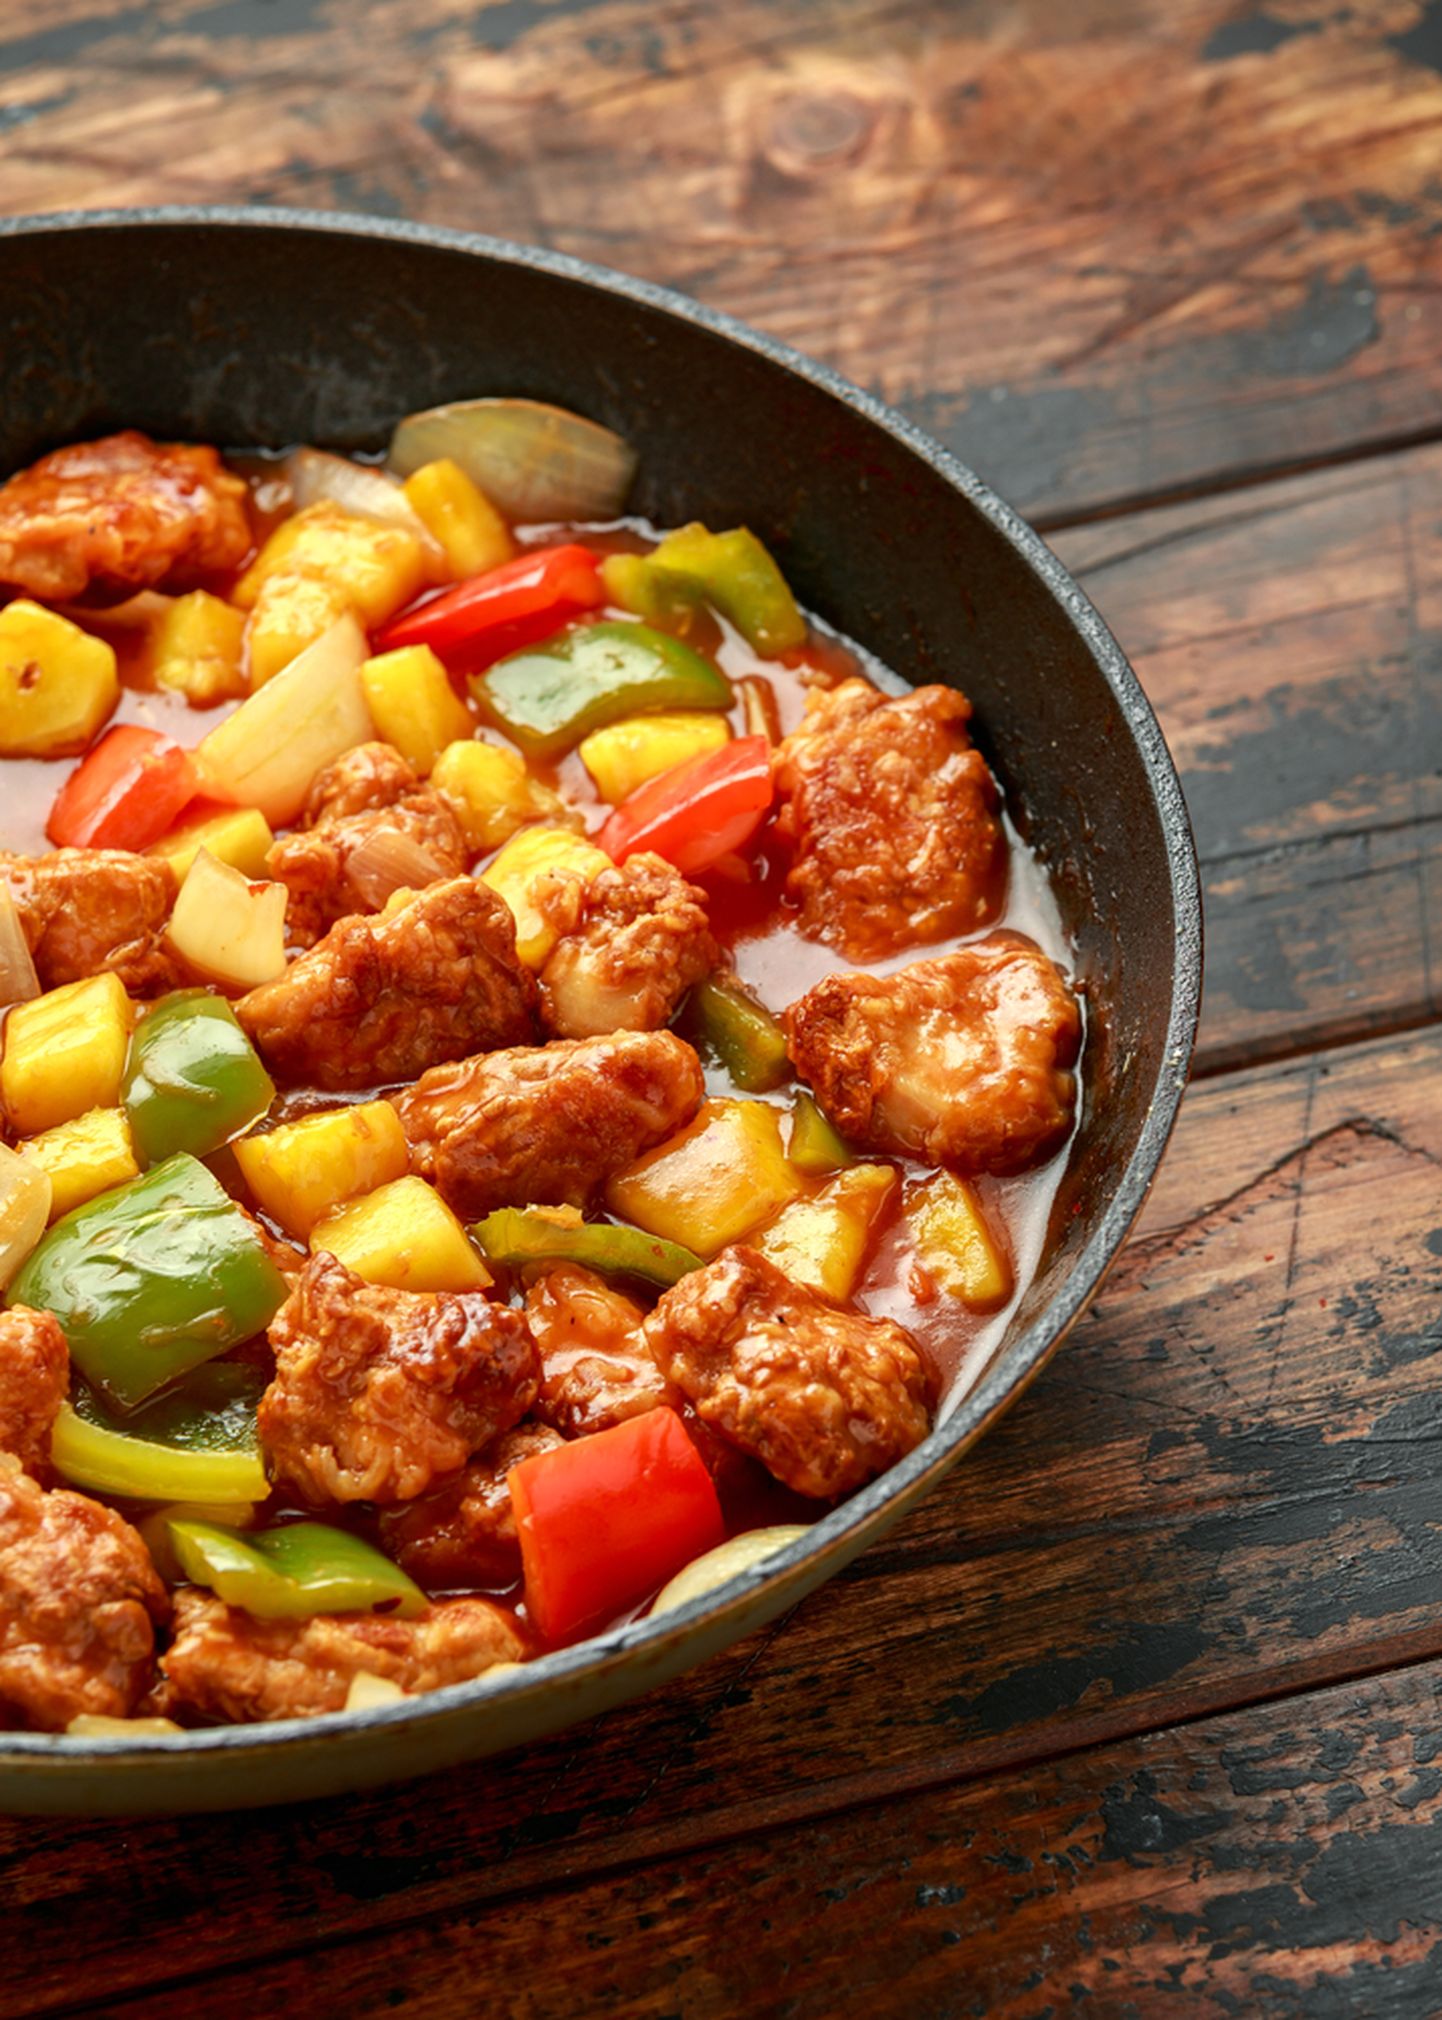 Lihtne ja maitsev: kana-paprika panniroog